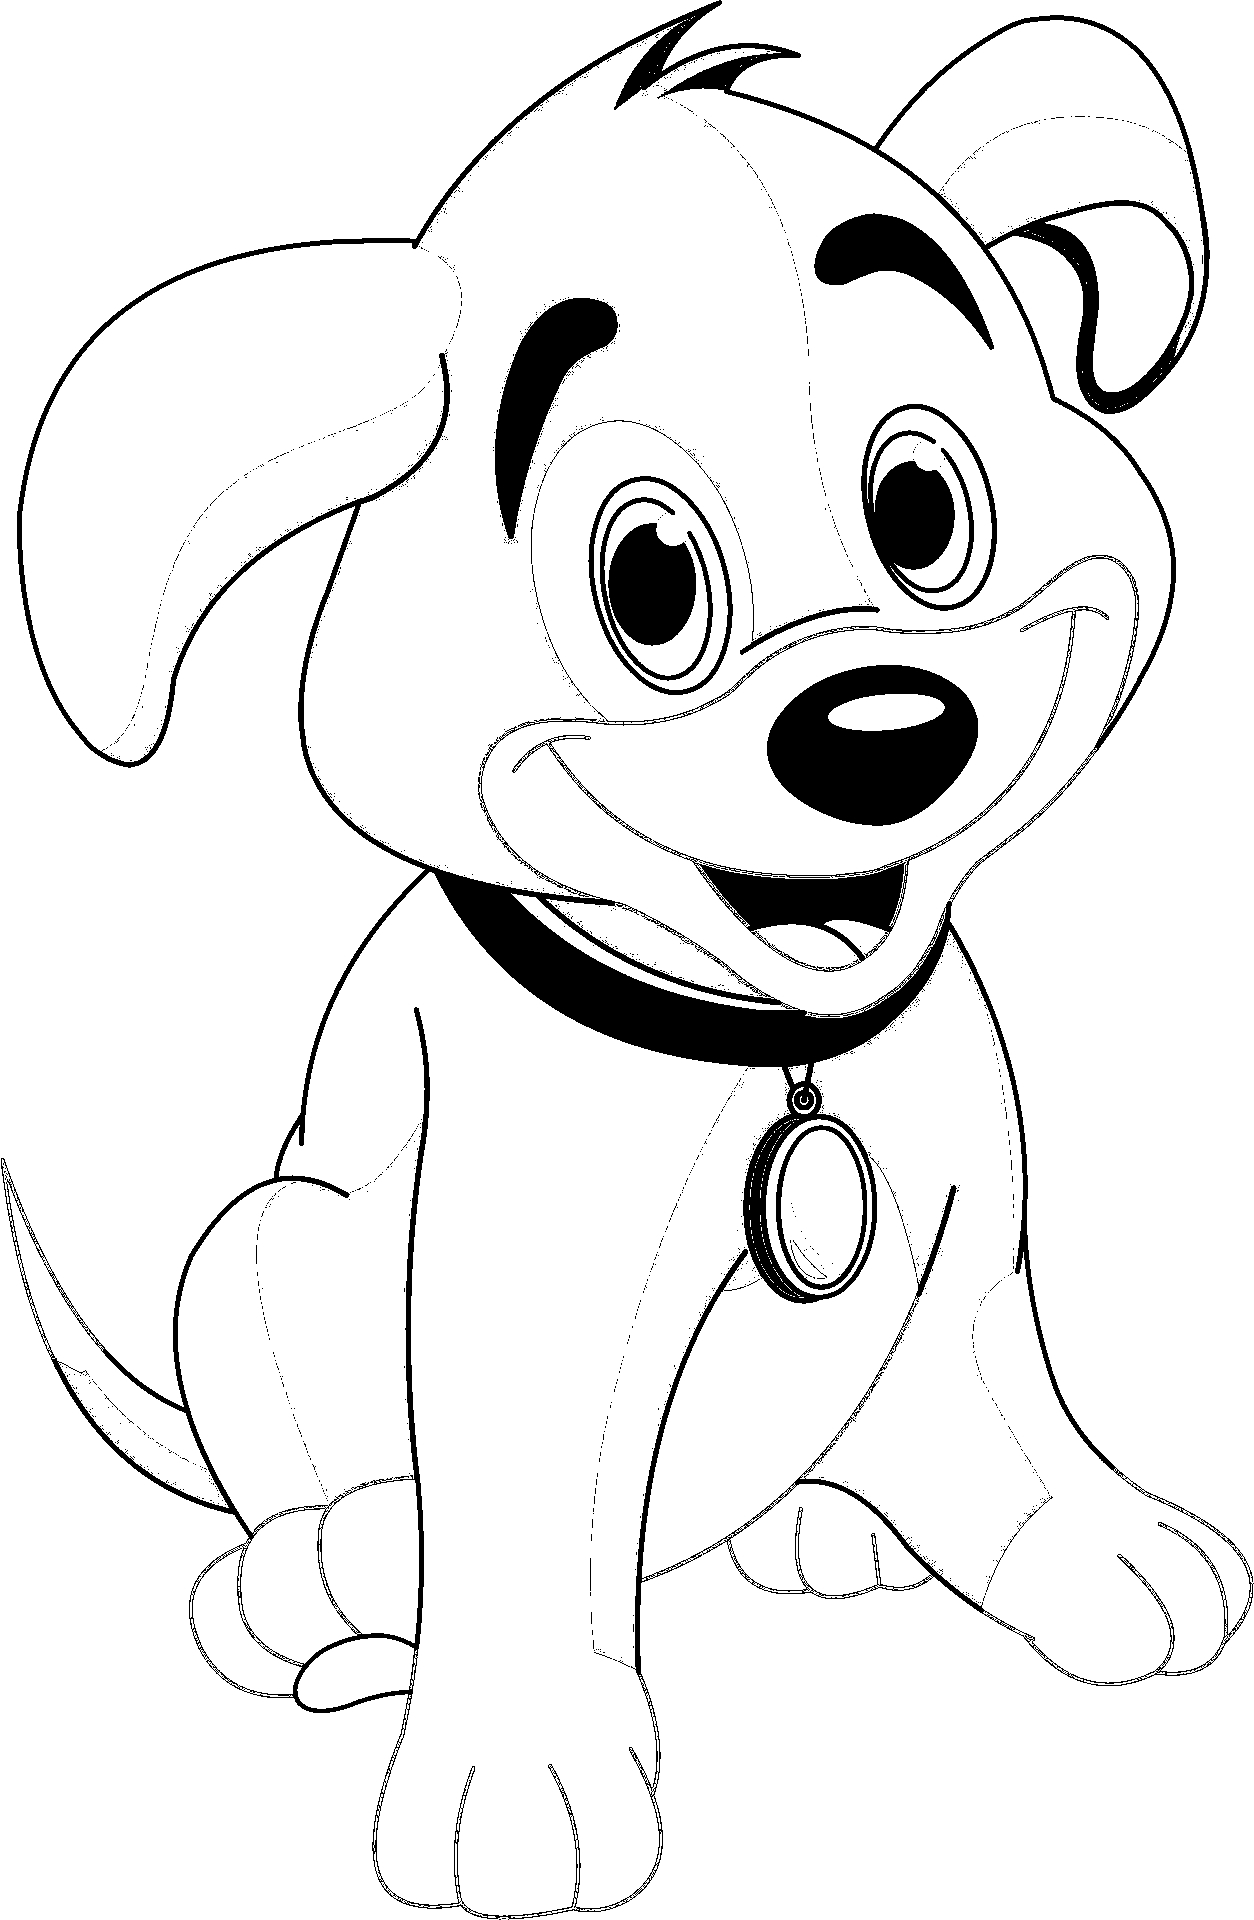 Disegno da colorare di cucciolo di cane stile cartone animato